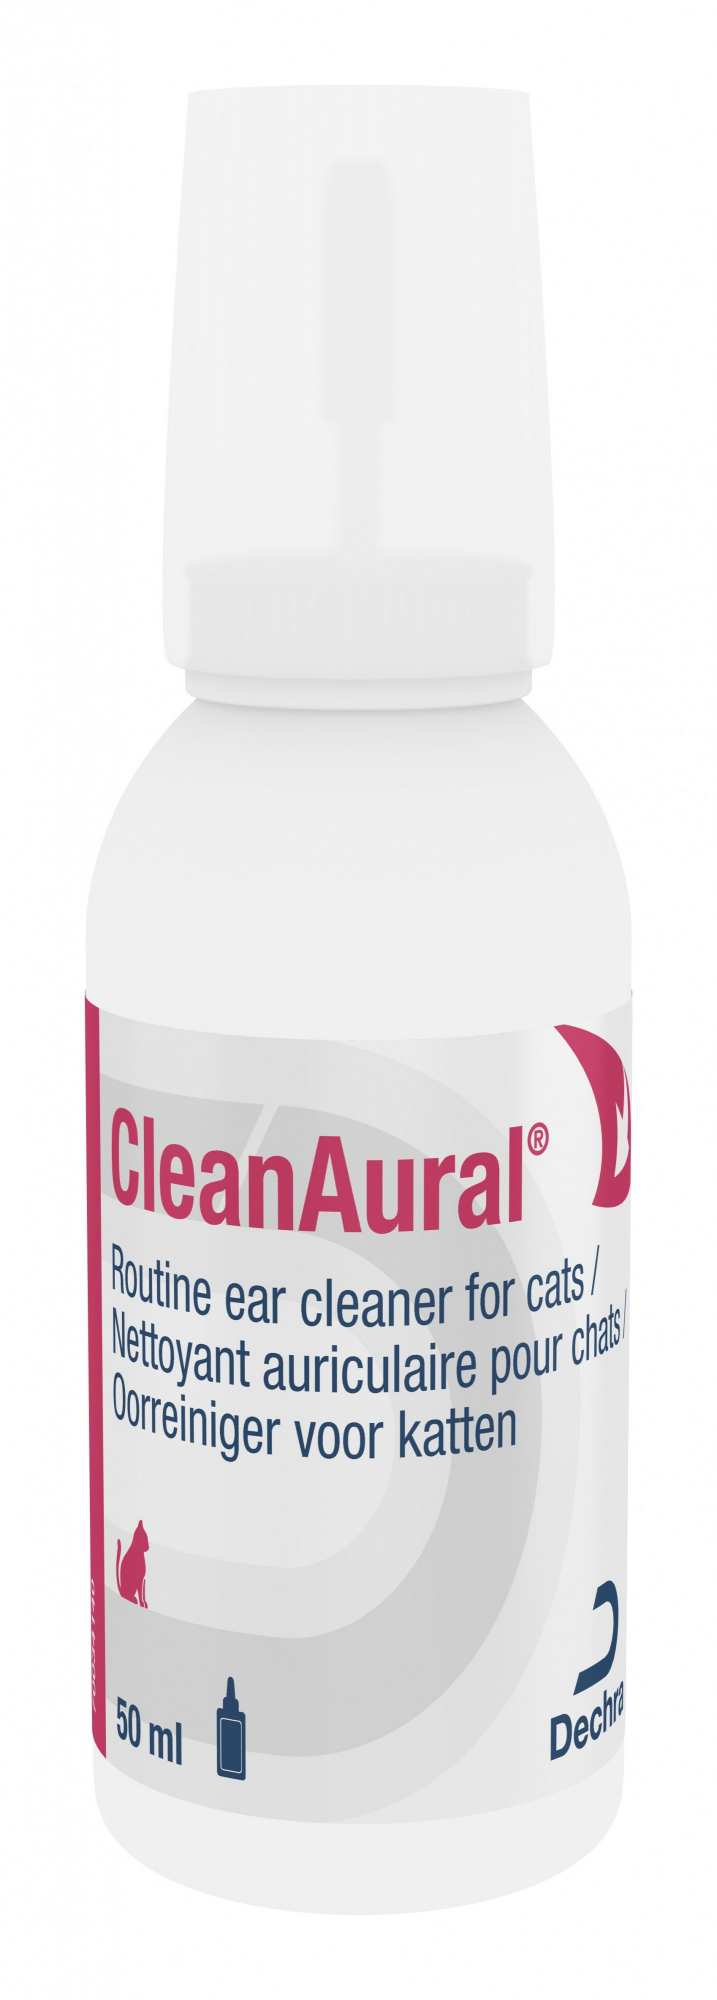 Dechra Cleanaural limpador de orelhas de gatos